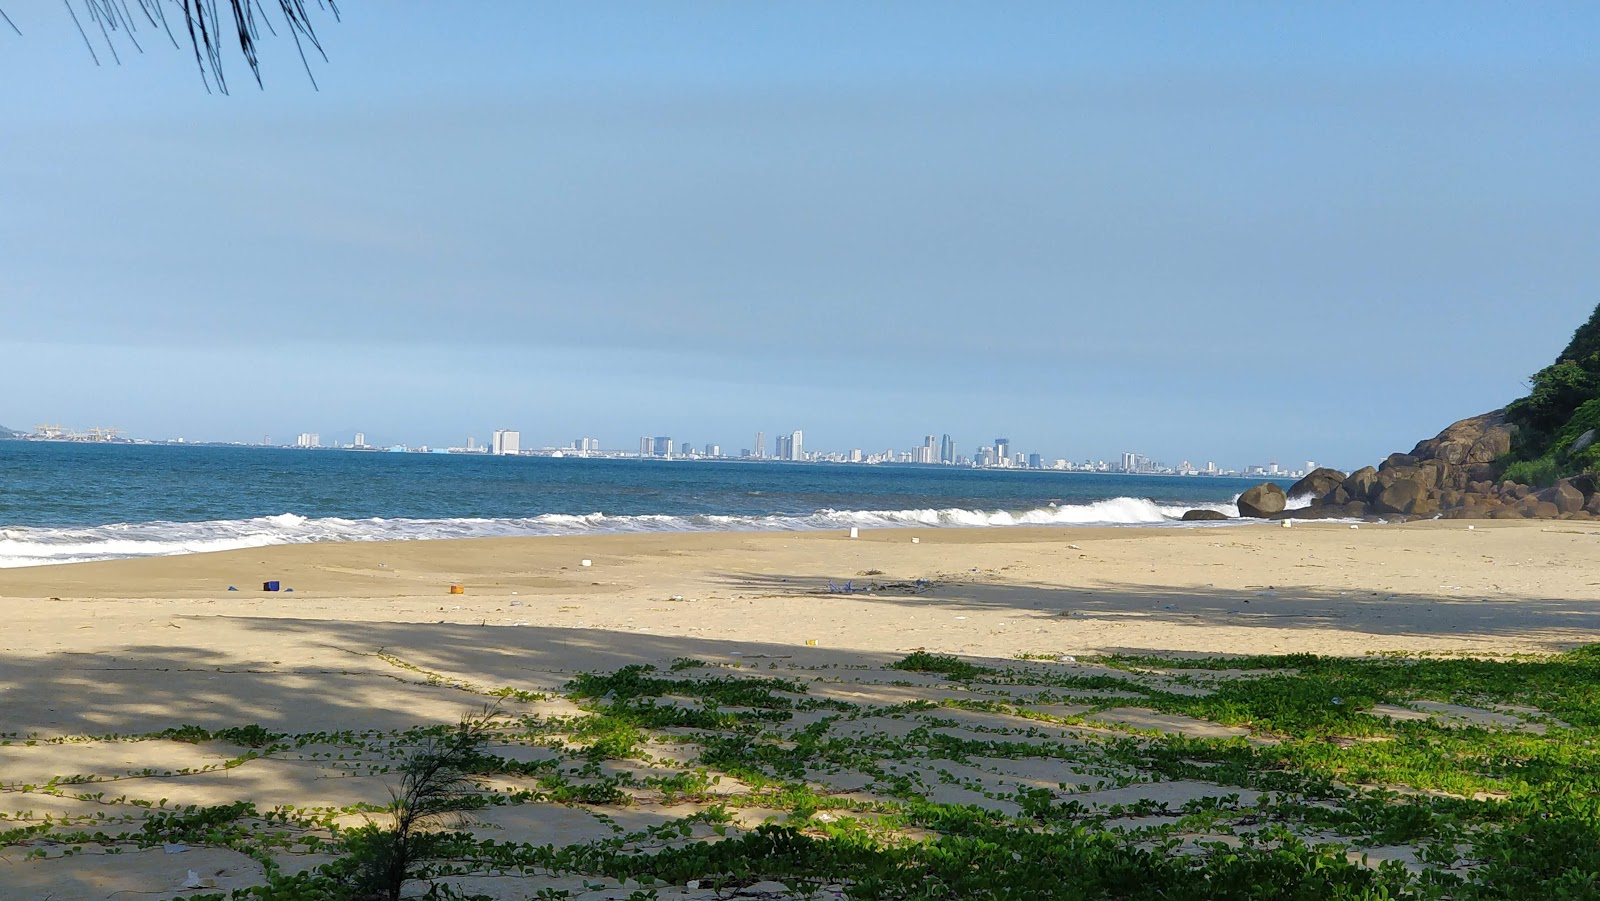 Zdjęcie Ham Beach z powierzchnią jasny piasek